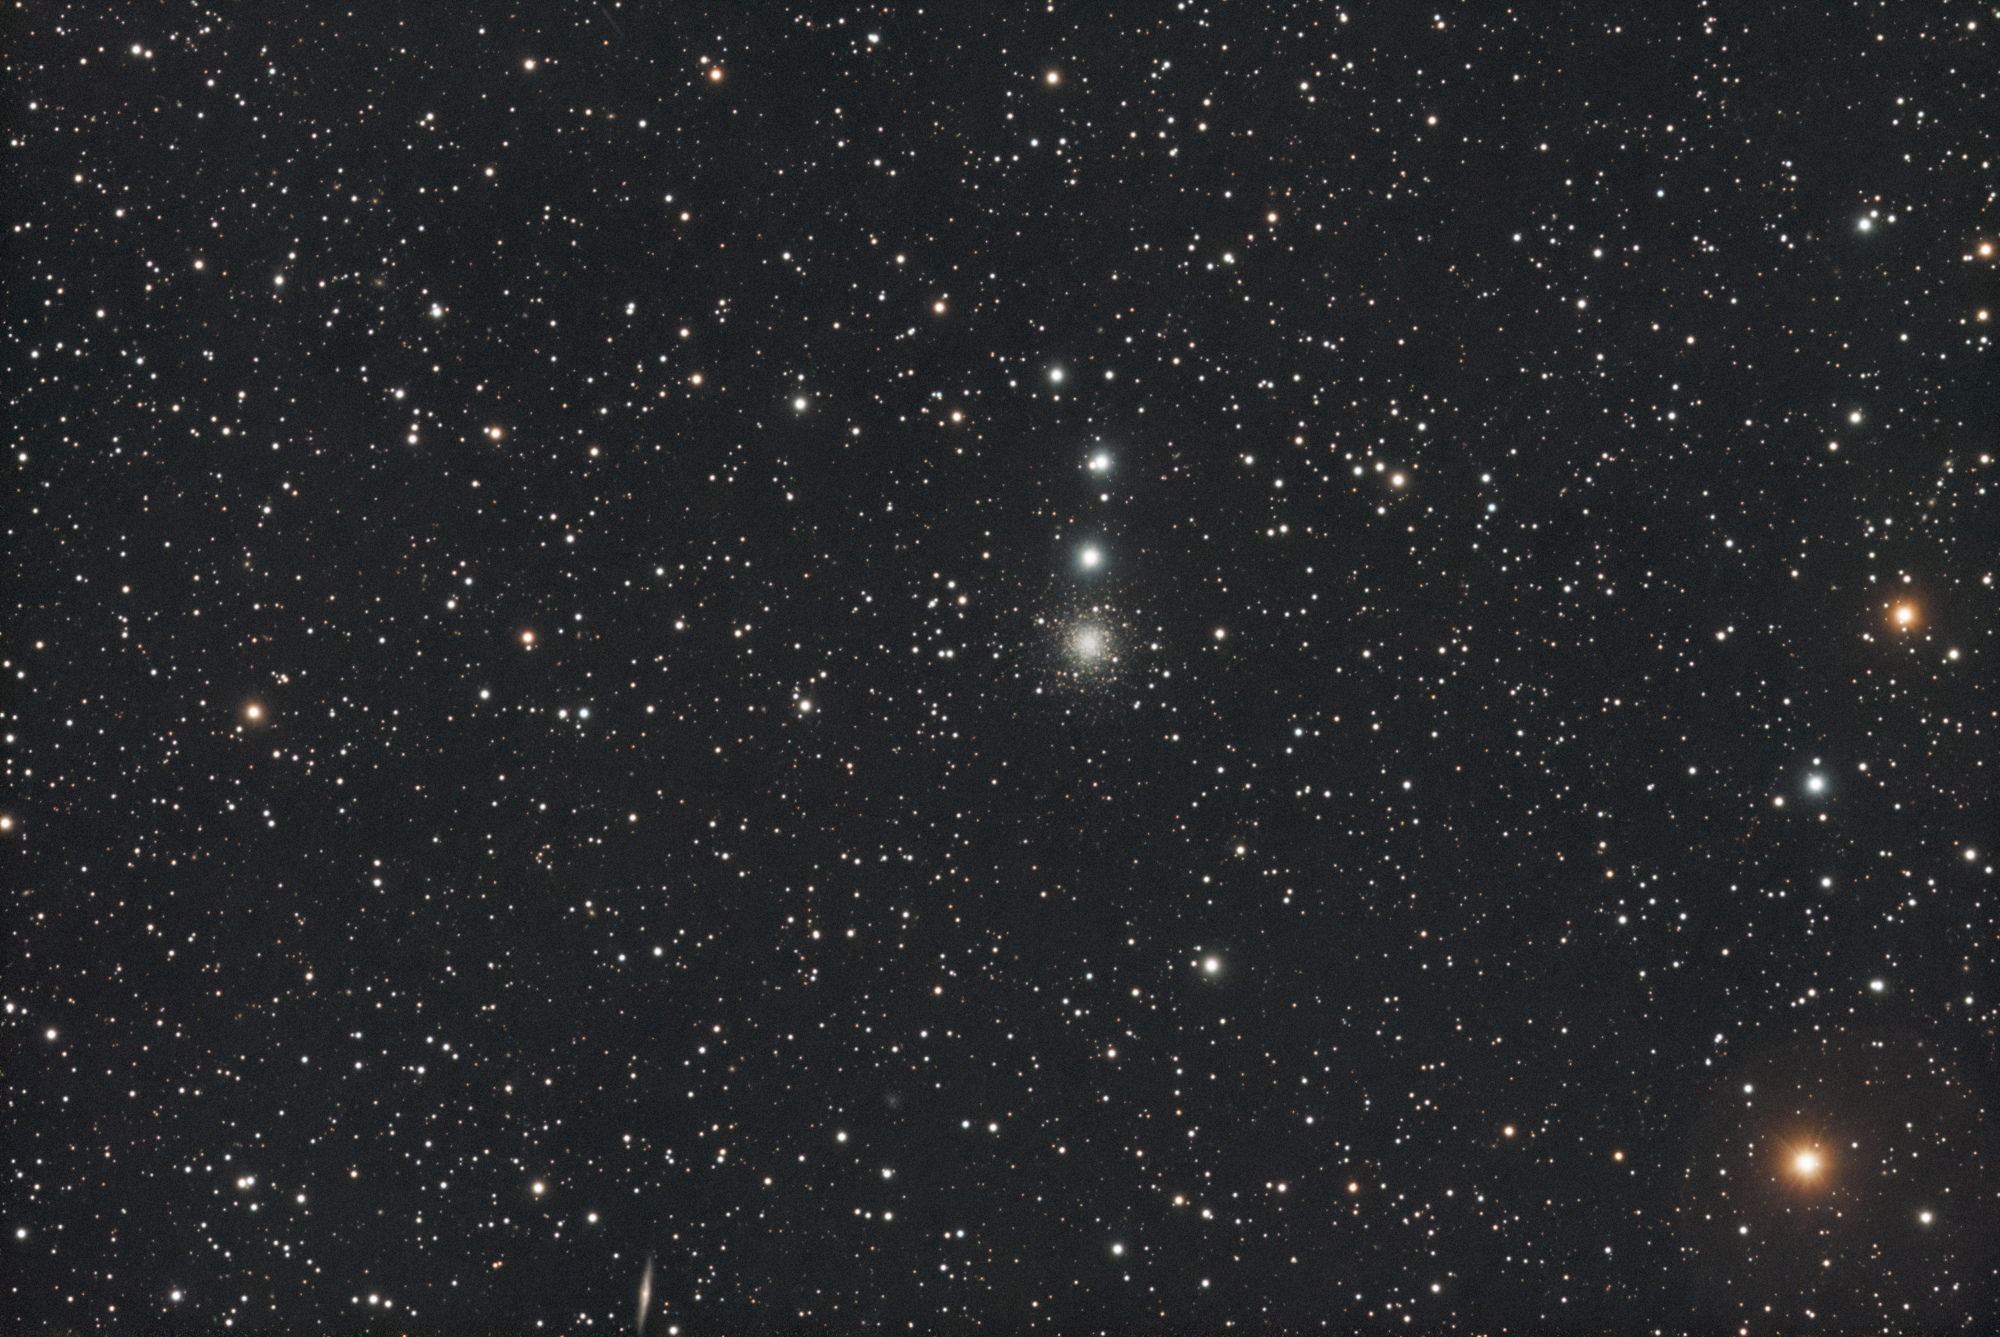 NGC_2419_SIRIL-L1-iris-cs5-2-FINAL-2-x.jpg